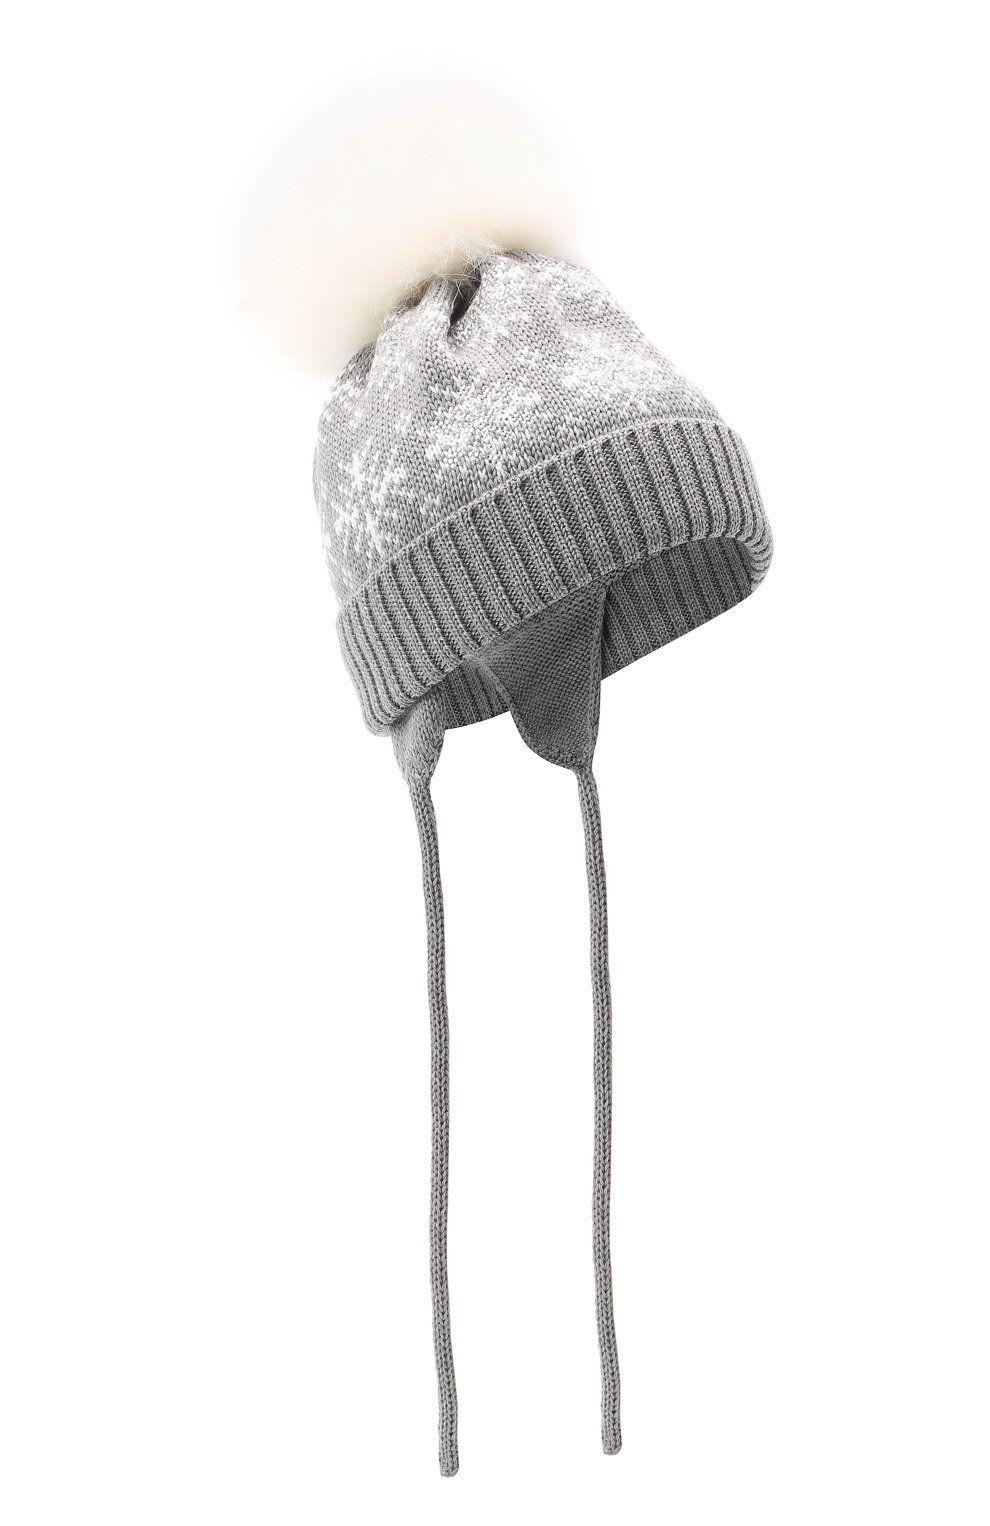 Шерстяная шапка с меховым помпоном CATYA детского серого цвета — купить в  интернет-магазине ЦУМ, арт. 024671/A